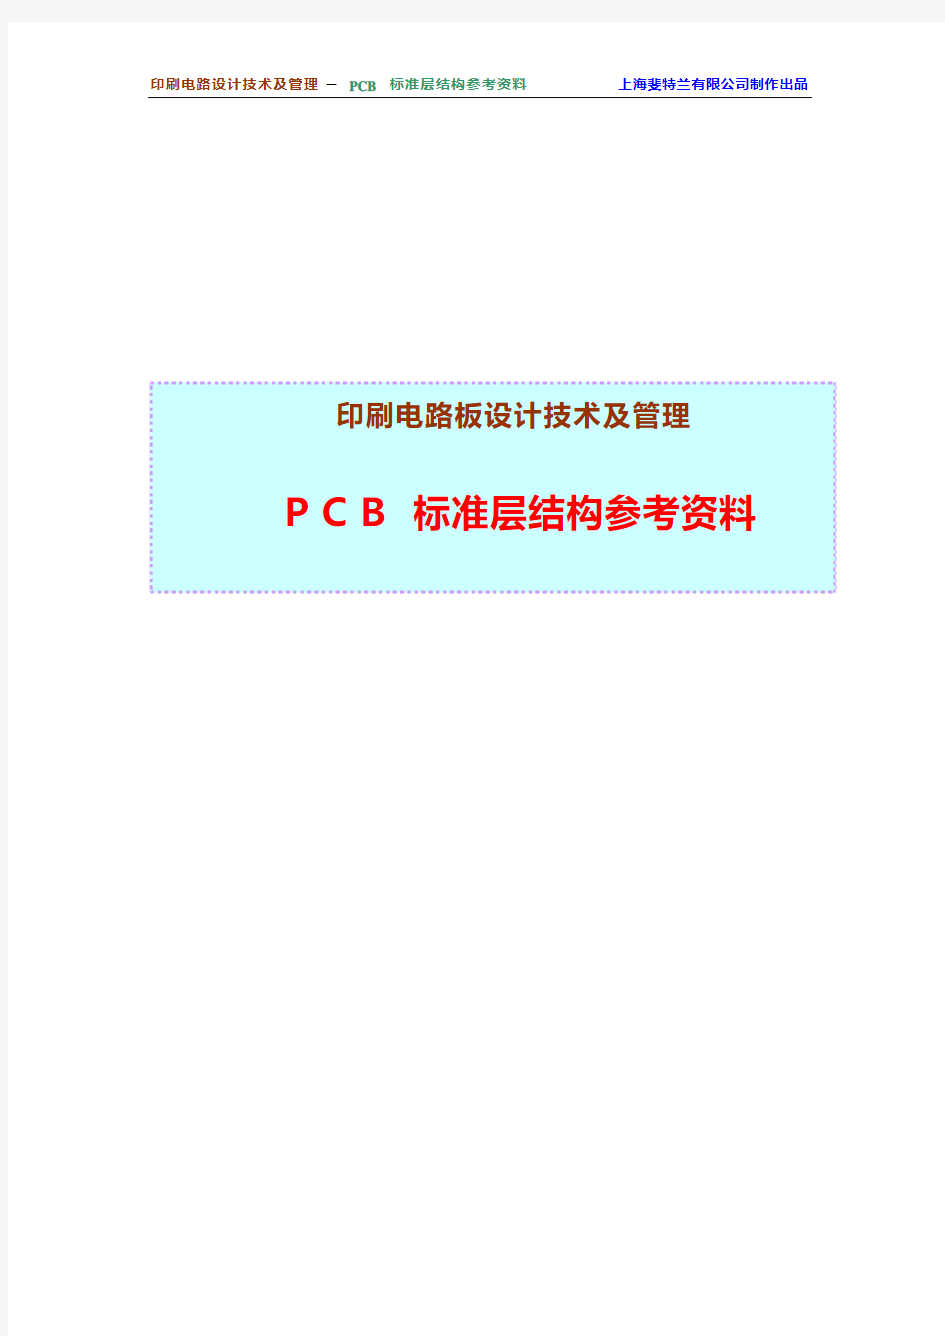 PCB标准参考